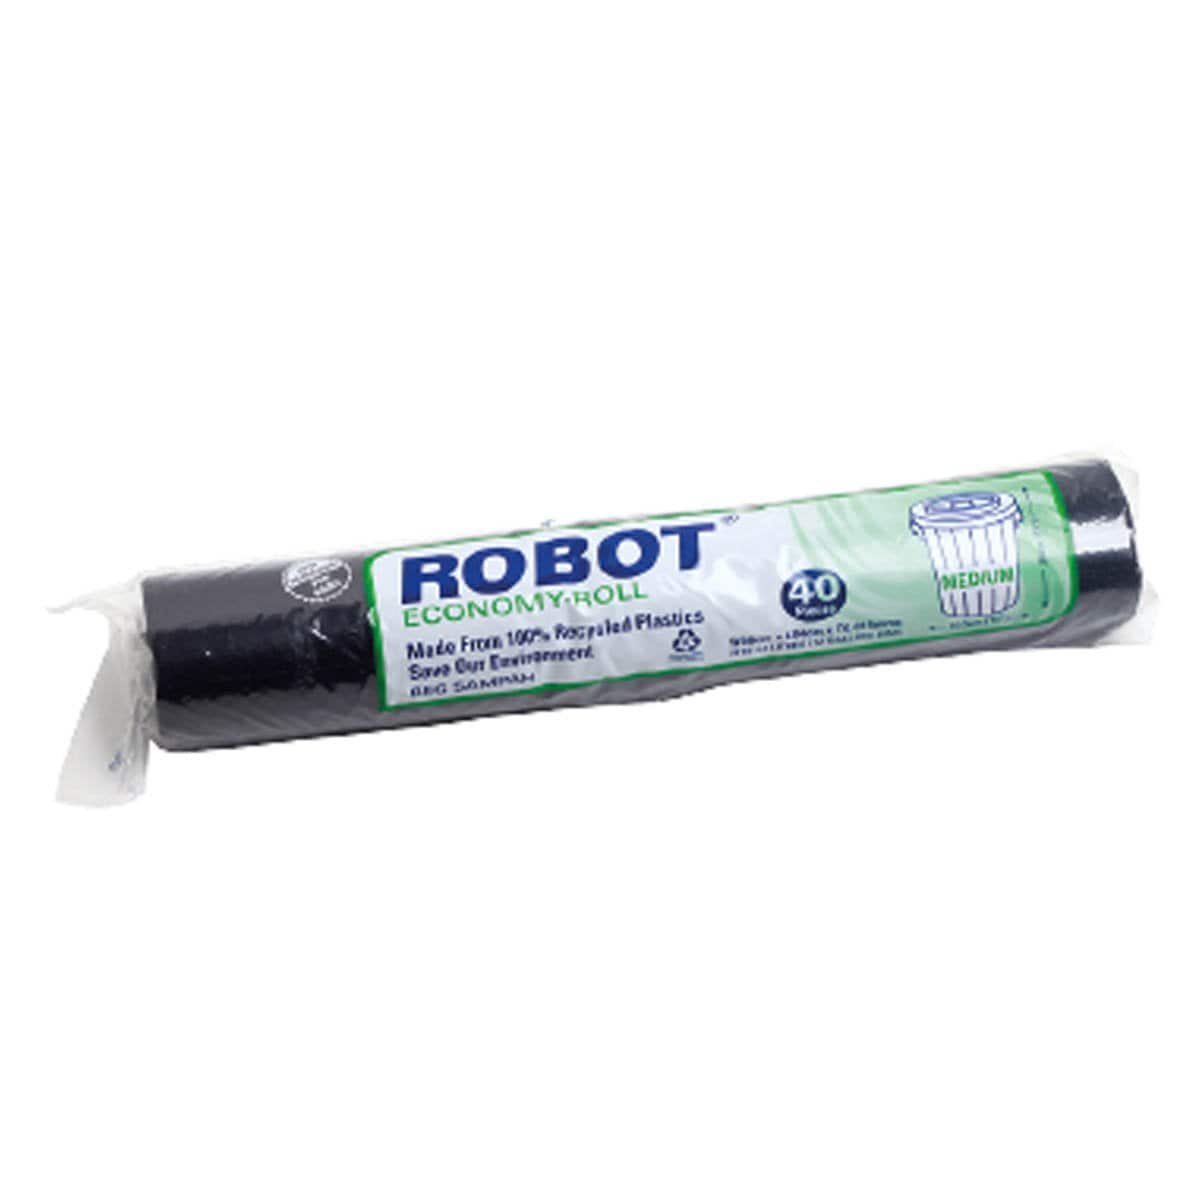 Robot Garbage Roll (M) 40pc